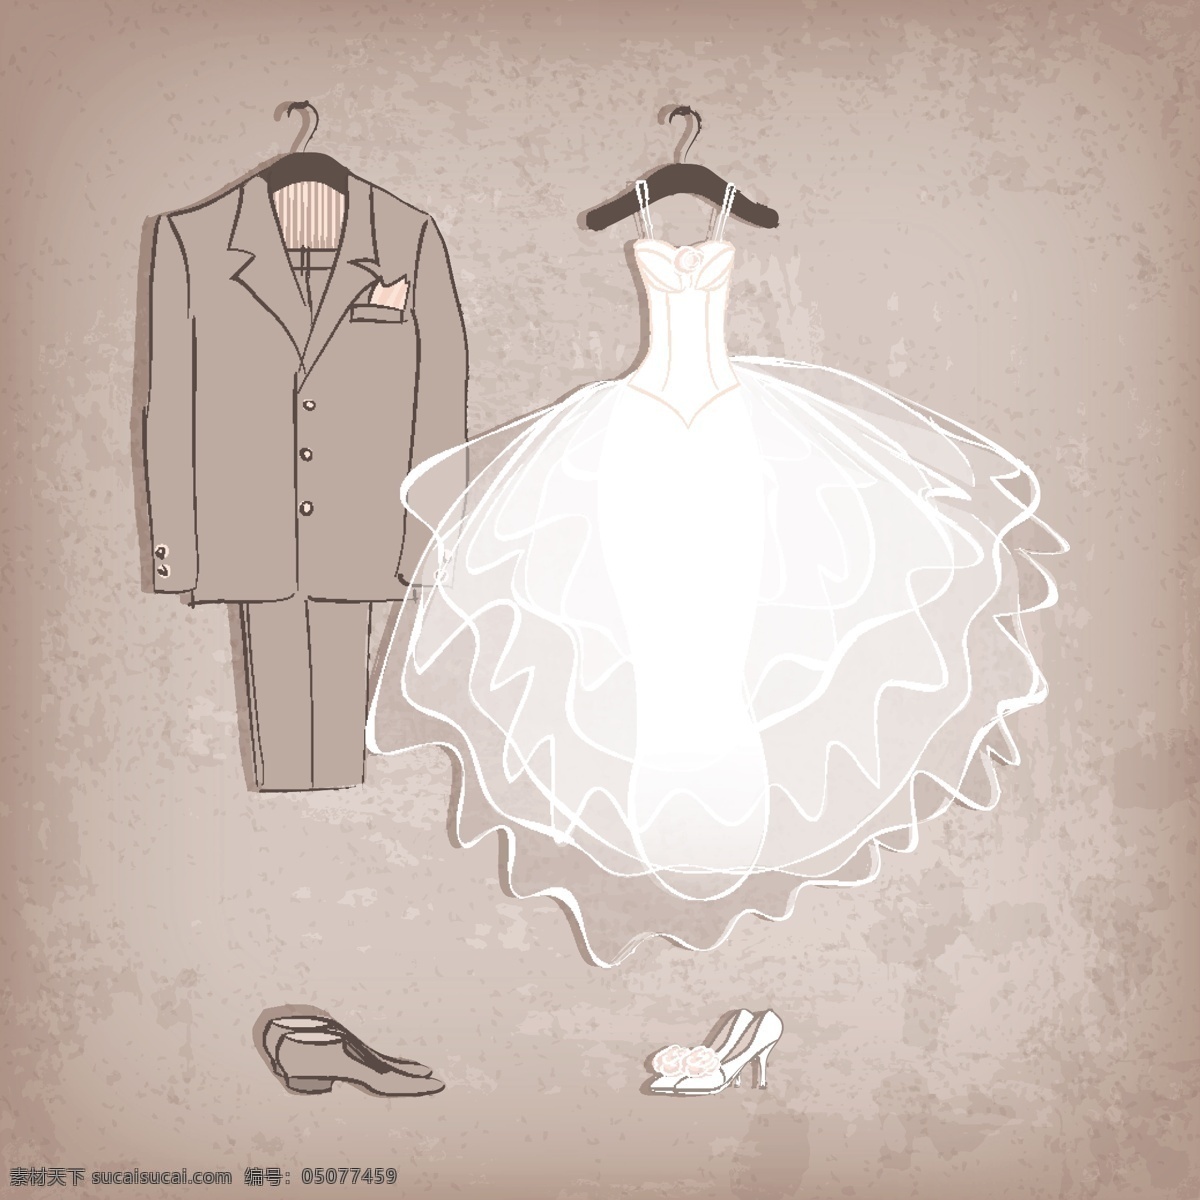 短式 婚礼 婚纱礼服 相关 矢量 男装 西装 装饰素材 创意设计 设计元素素材